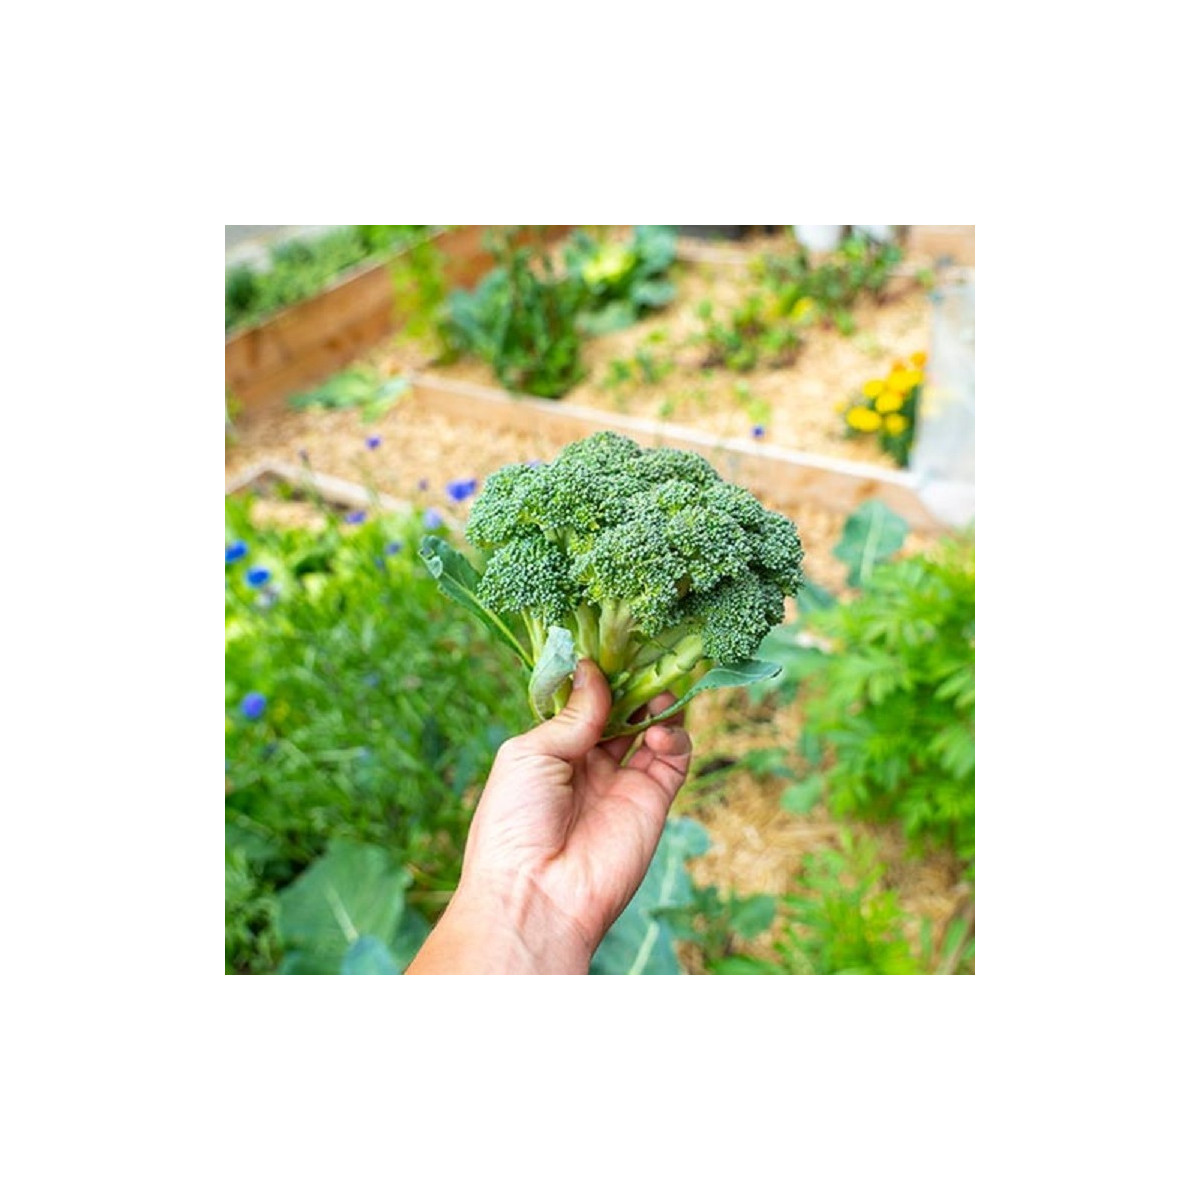 BIO Brokolice Calabrese Natalino - Brassica oleracea L. - osivo brokolice - 30 ks